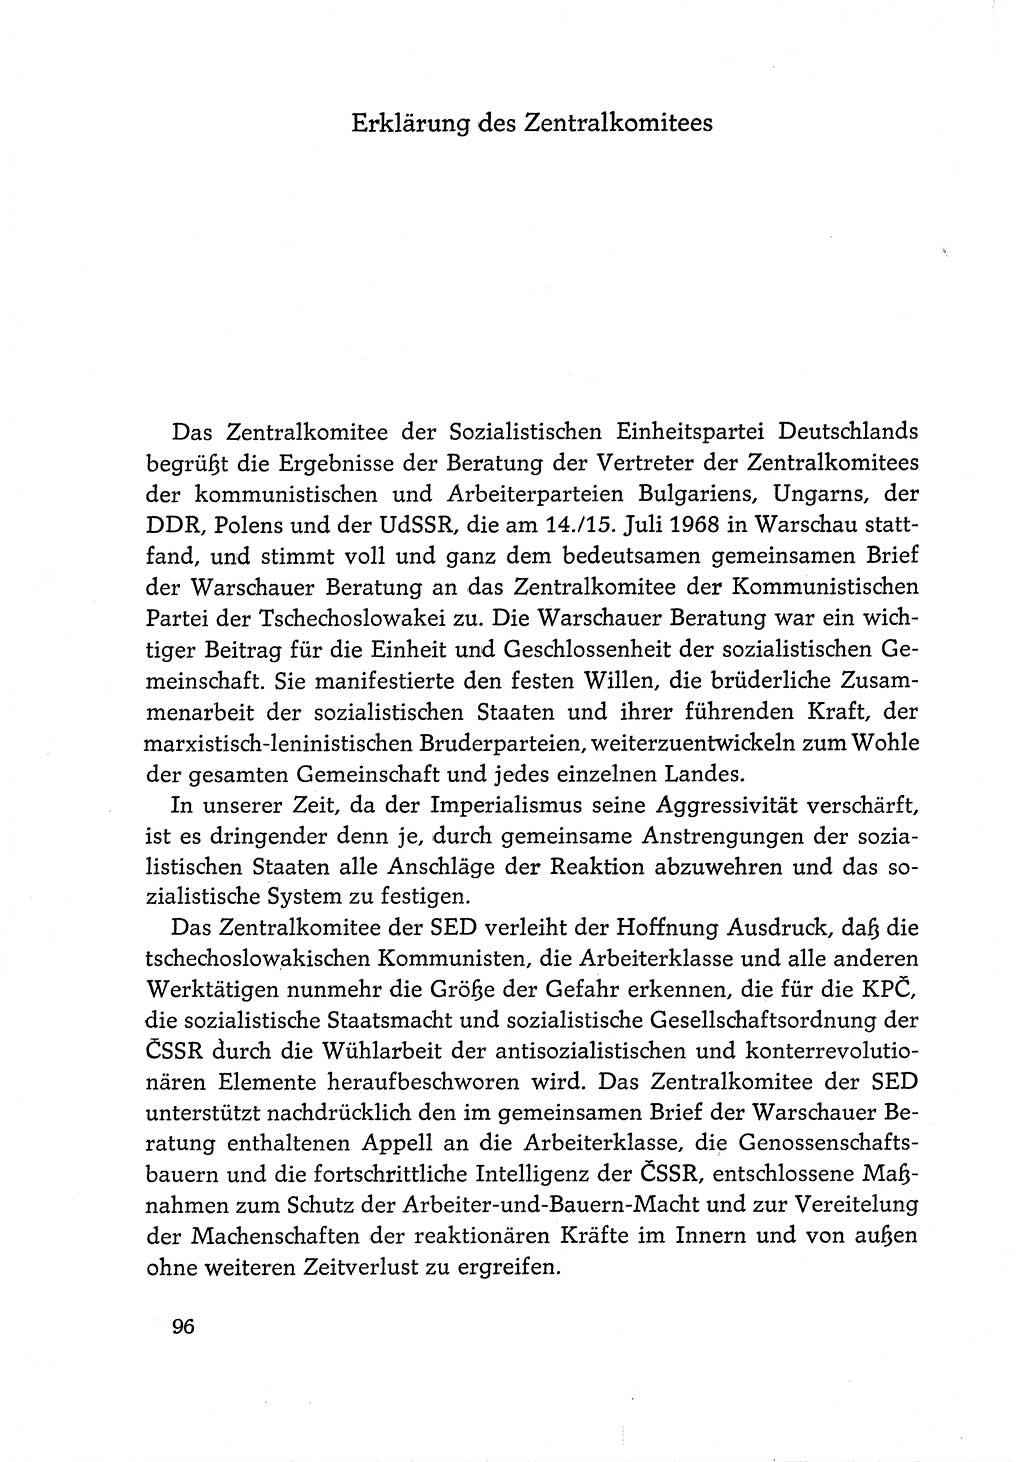 Dokumente der Sozialistischen Einheitspartei Deutschlands (SED) [Deutsche Demokratische Republik (DDR)] 1968-1969, Seite 96 (Dok. SED DDR 1968-1969, S. 96)